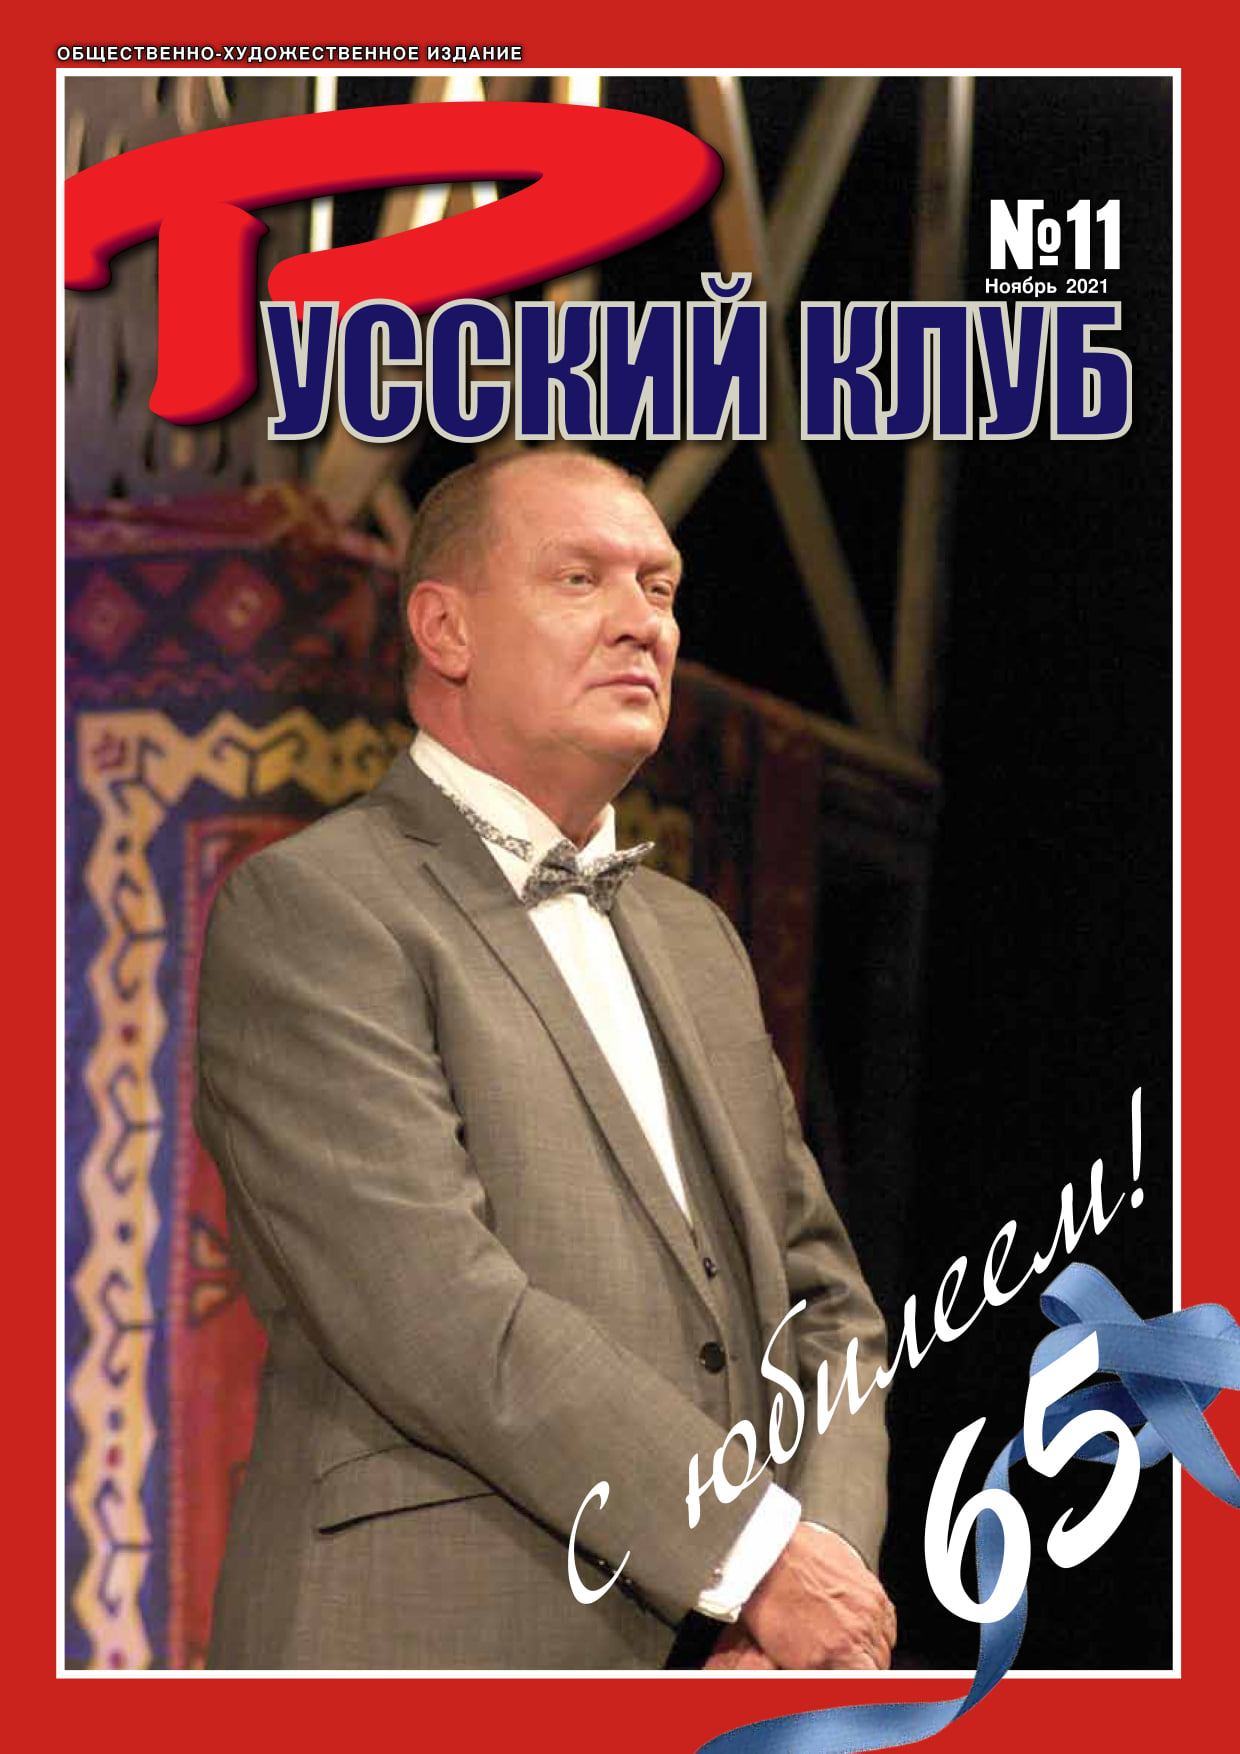 Журнал «Русский клуб» №11, ноябрь 2021 г